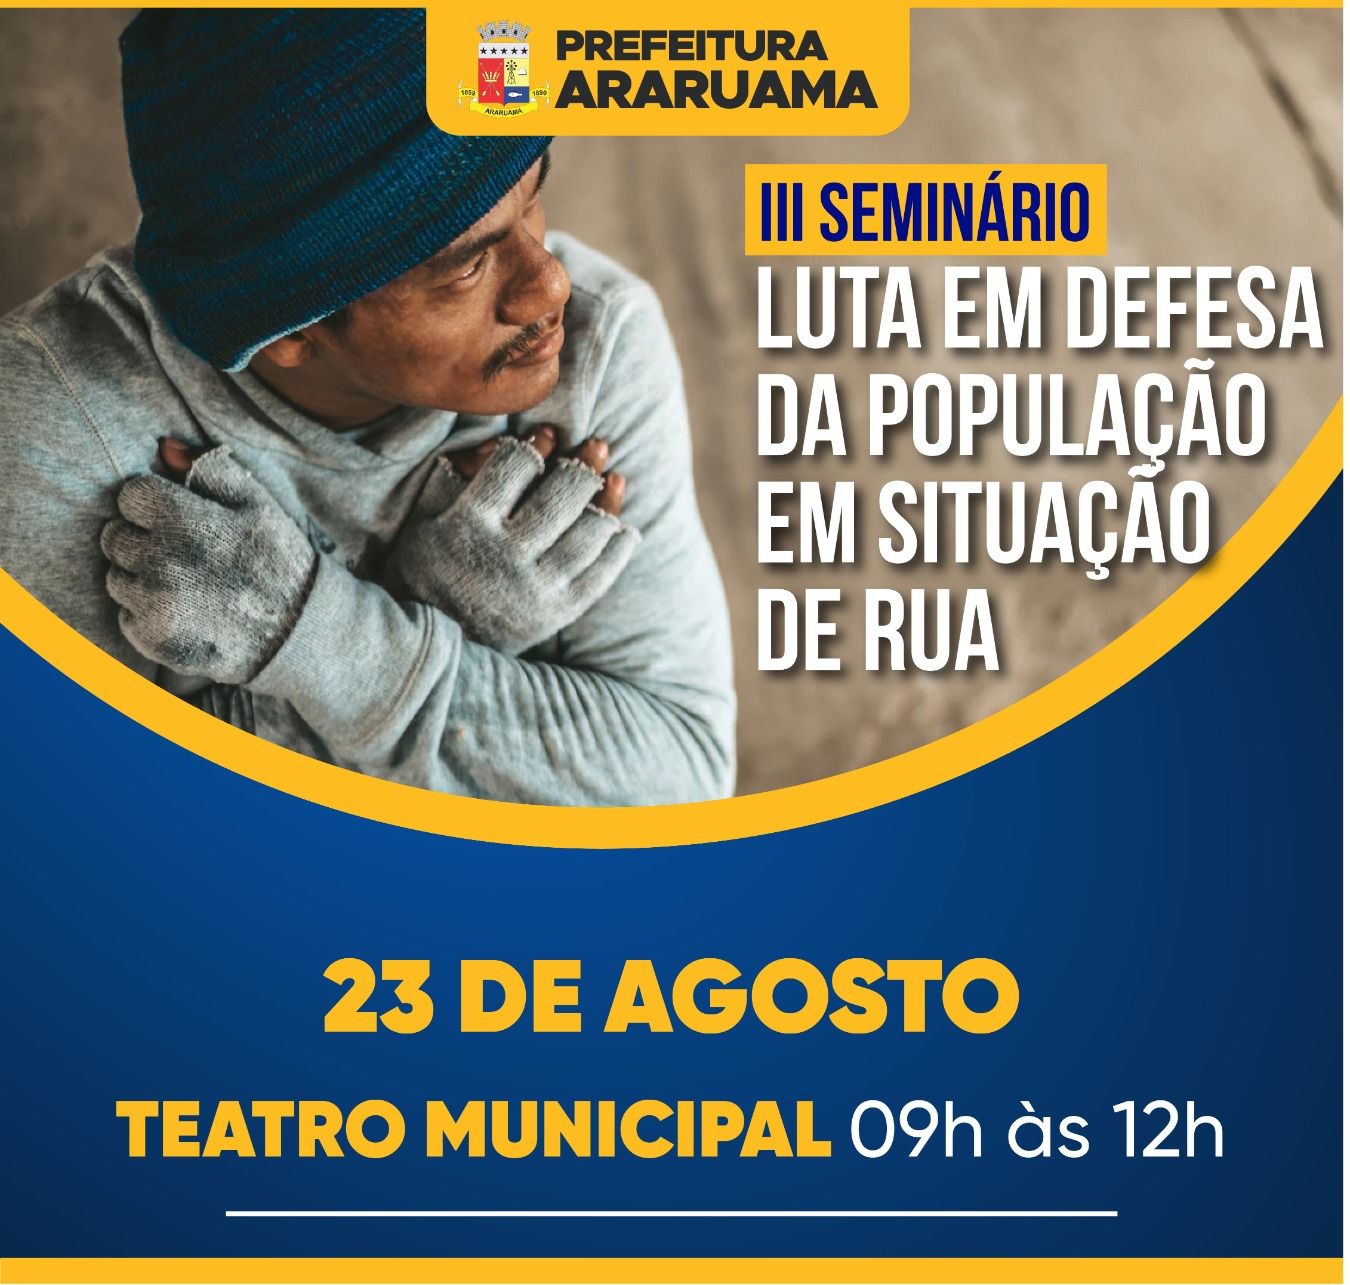 Prefeitura de Araruama vai realizar evento para fortalecer a luta em defesa da população em situação de rua